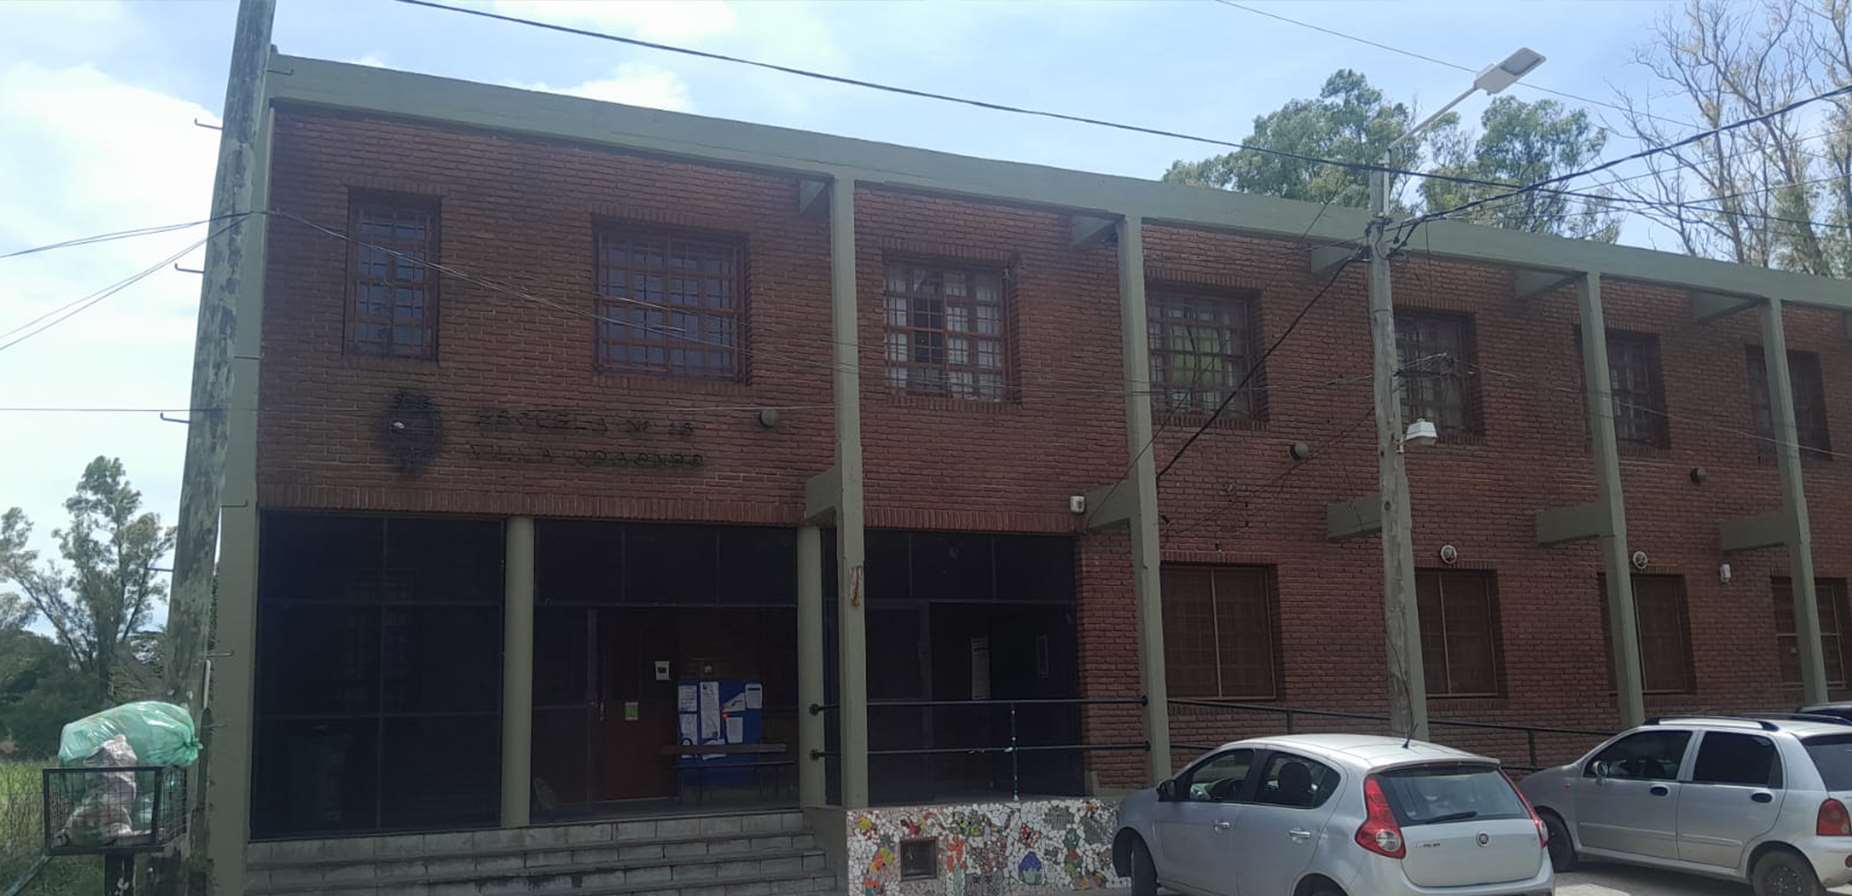 Villa Udaondo, aprovechando la tormenta robaron en la escuela primaria 18: "se llevaron hasta la bandera de ceremonia"